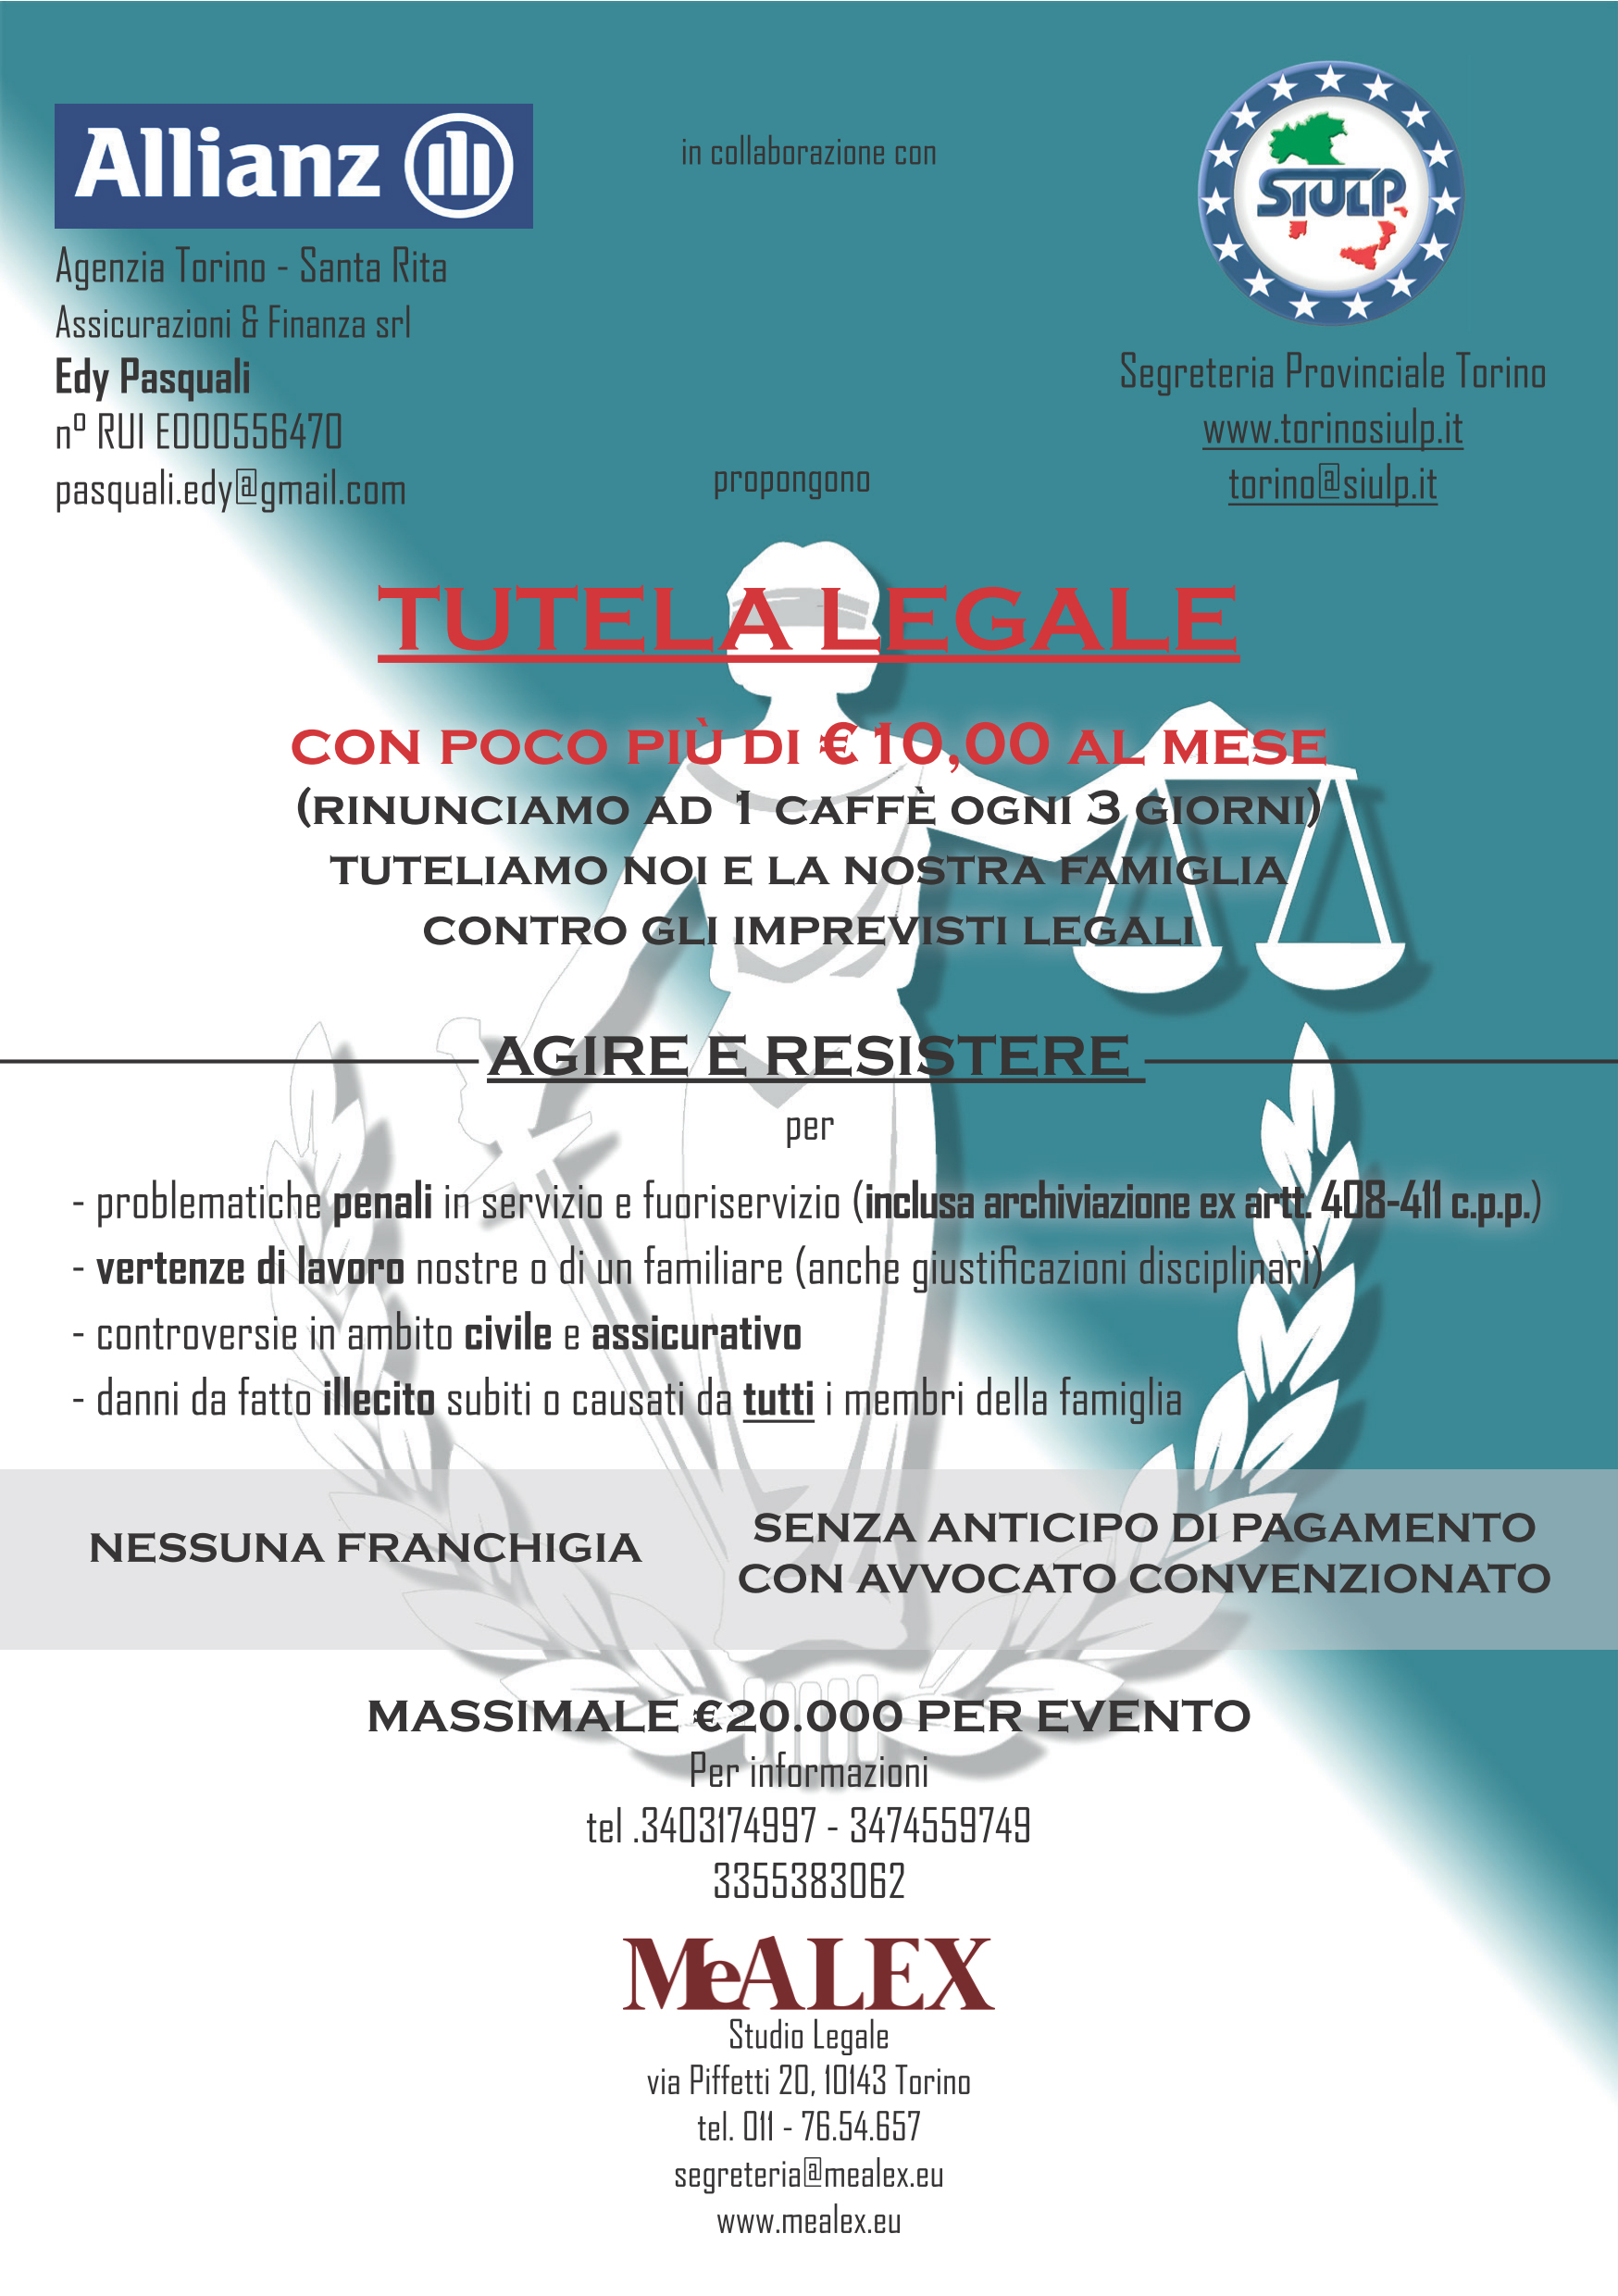 MeAlex Studio Legale / SIULP flyer